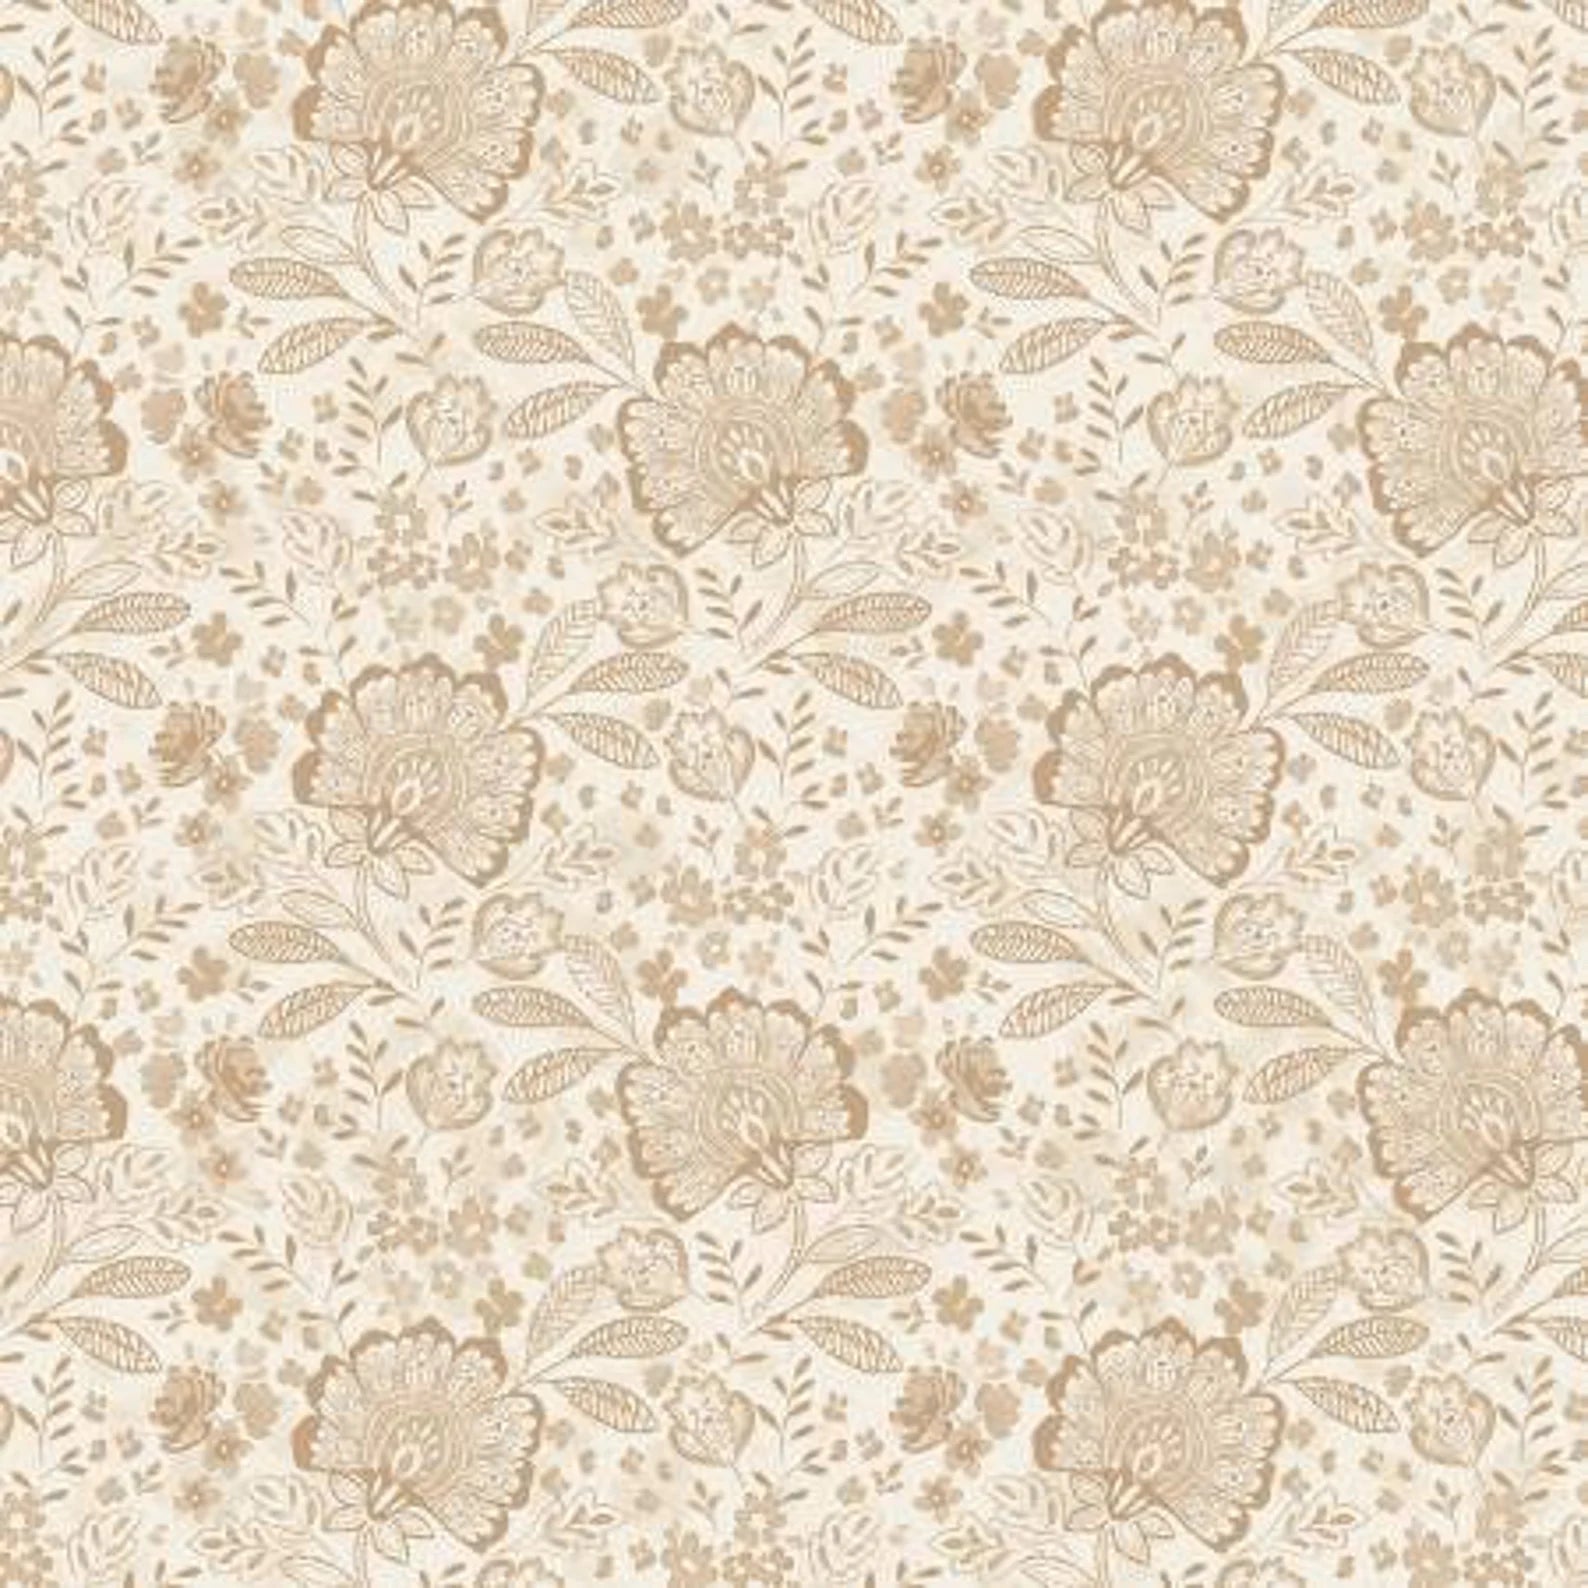 108" Elizabeth Quilt Backing Fabric - Tan/Cream - ELIZ 05112 NE